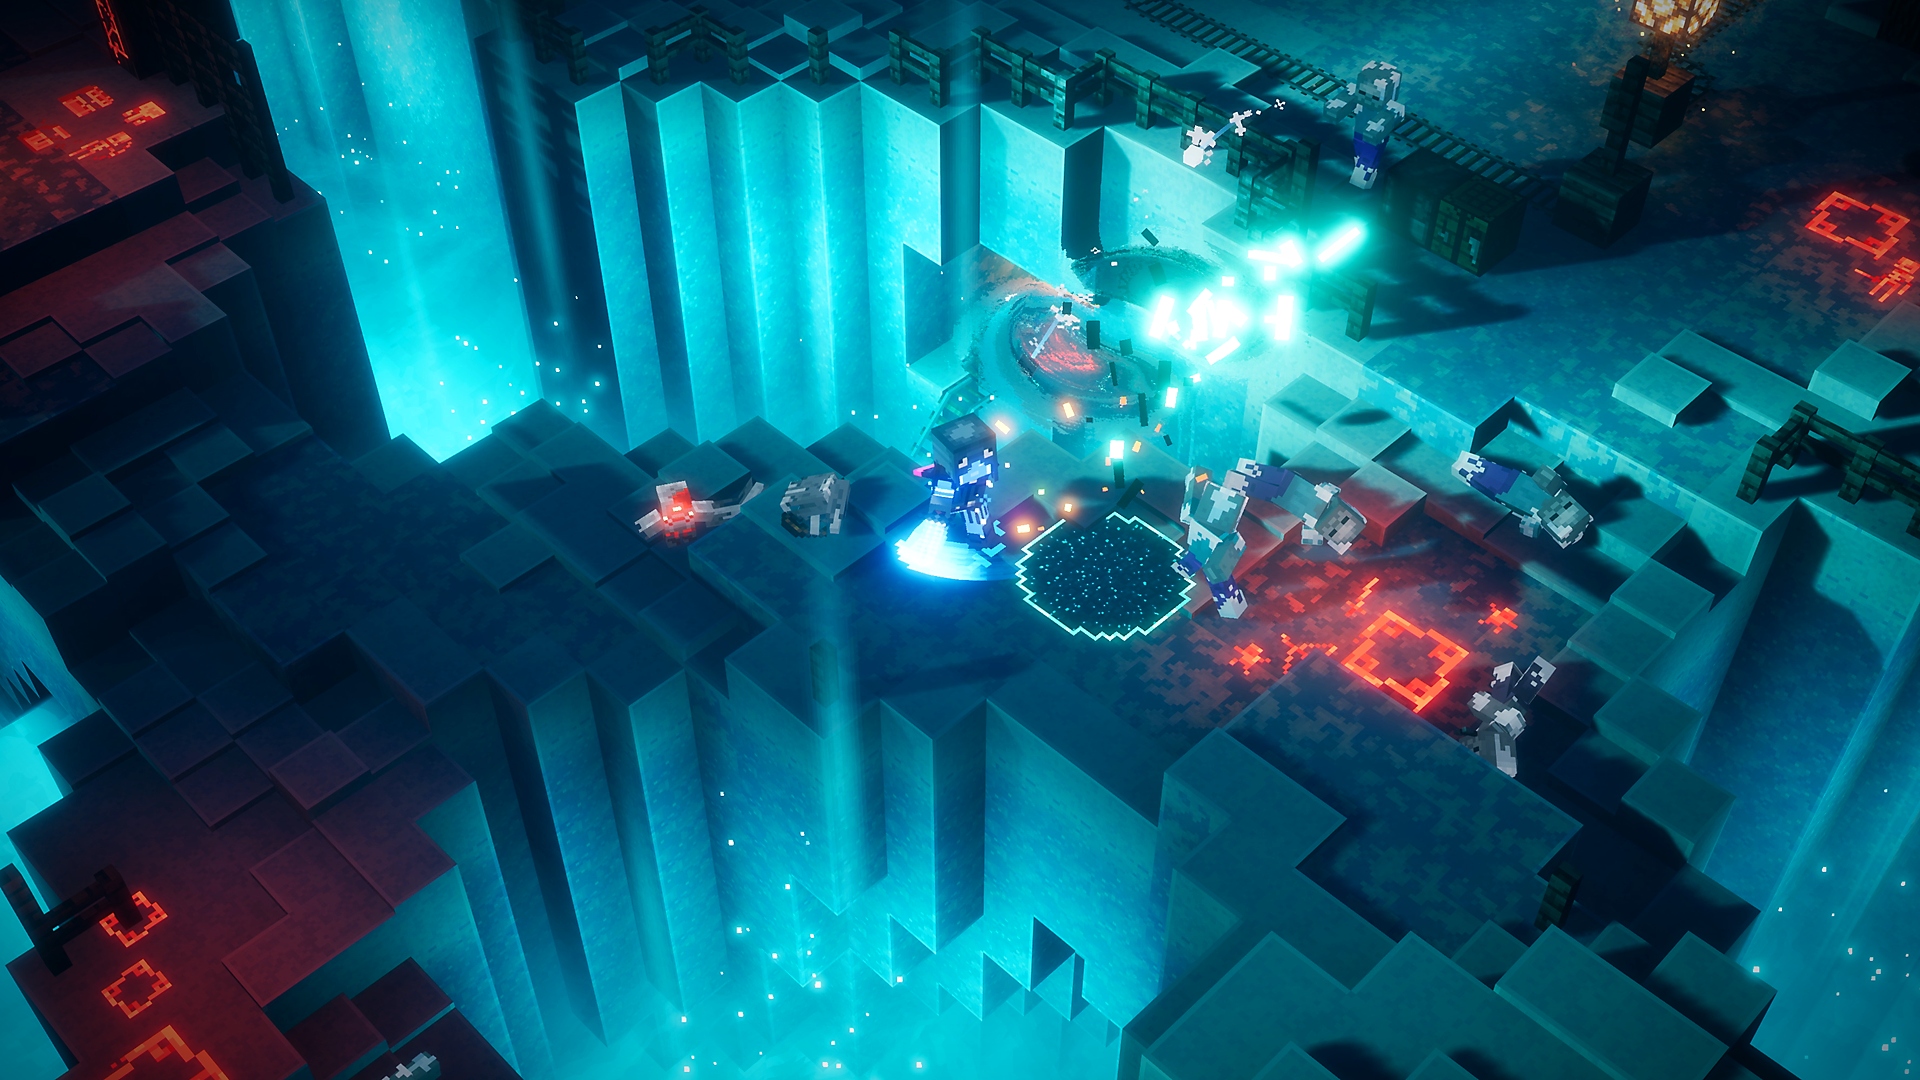 Minecraft Dungeons Seasonal Adventure - luminous night แสดงให้เห็นแสงไฟสีฟ้าและตัวละครสู้กันอยู่